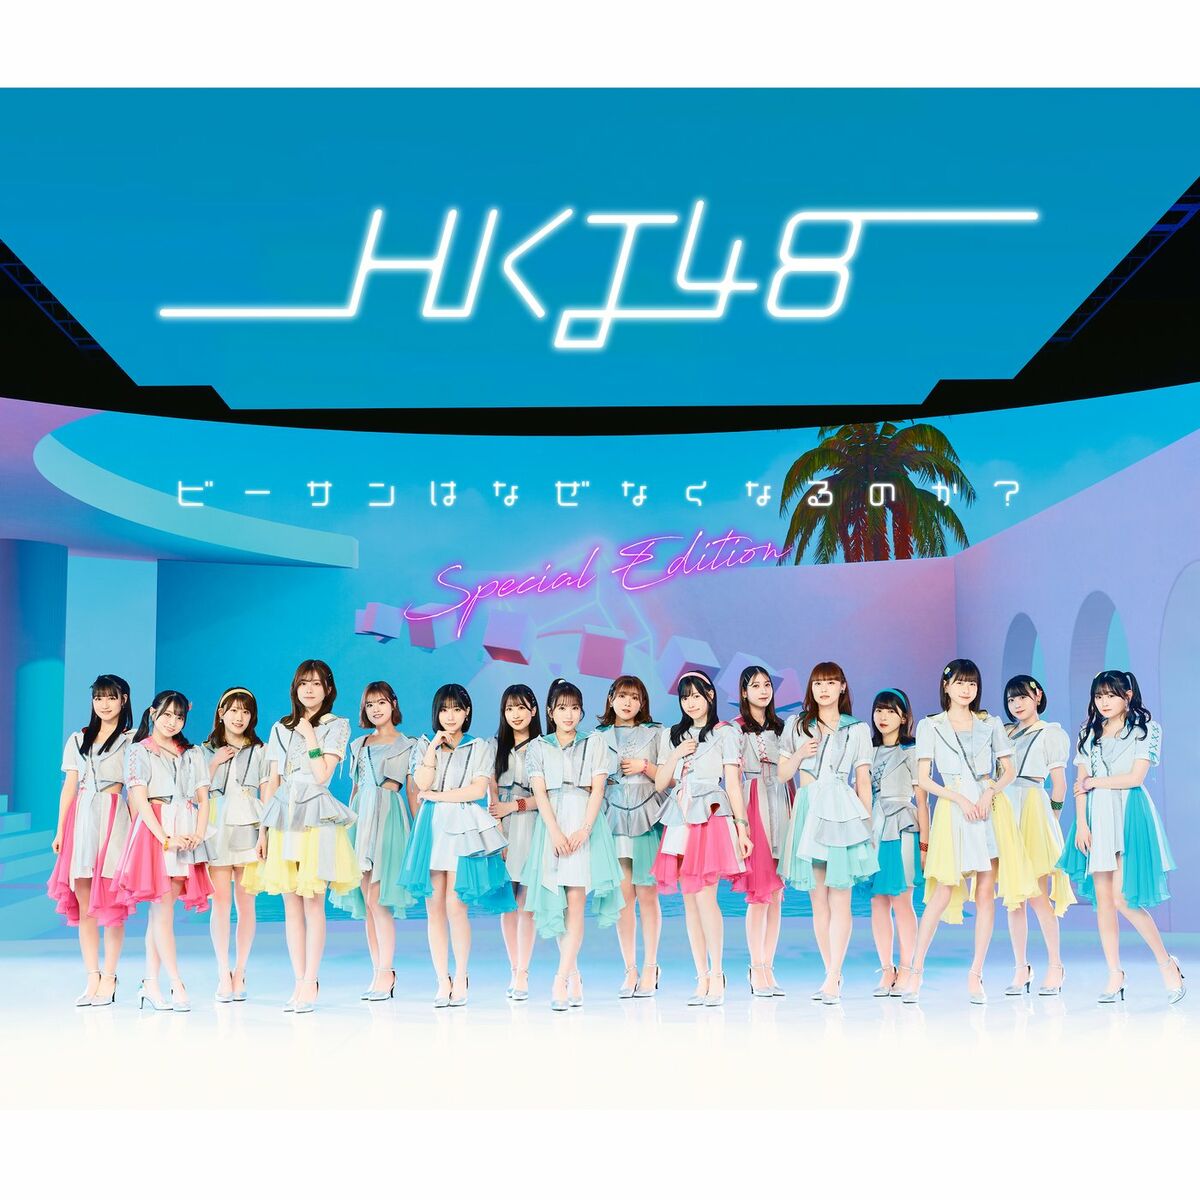 オンライン価格 HKT48 アイア特別公演 2015 特別ダイジェスト版 DVD ...